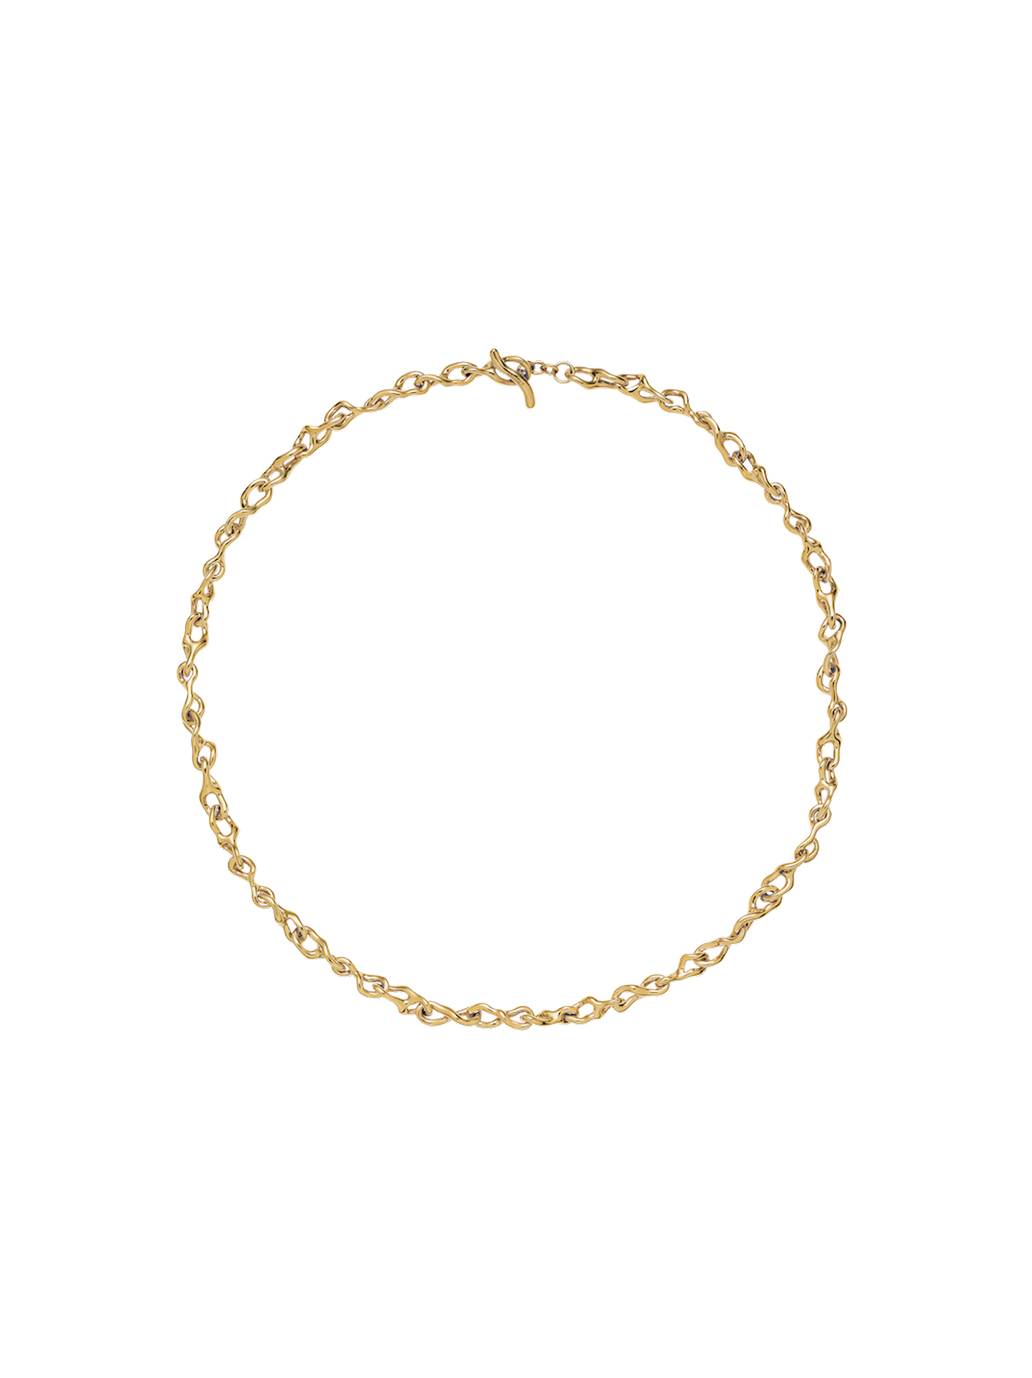 Juno necklace